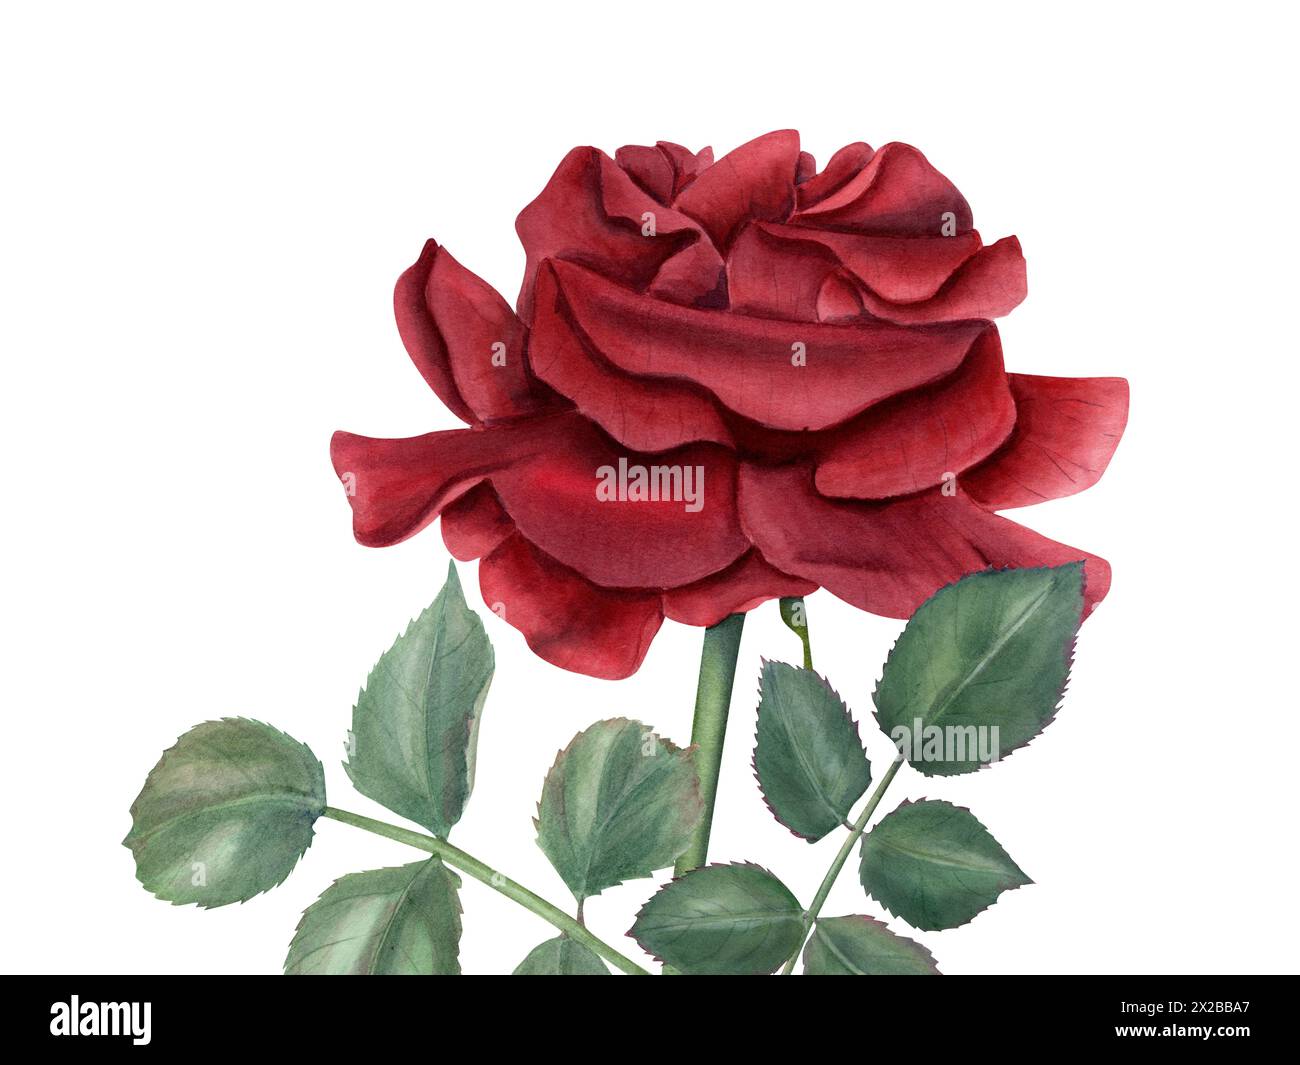 Dunkelrote Rose, grüne Blätter. Romantische Blume in rubinfarbenen Farben. Vintage realistische botanische Rose am Stiel. Aquarellillustration für Hochzeitsarrangements Stockfoto